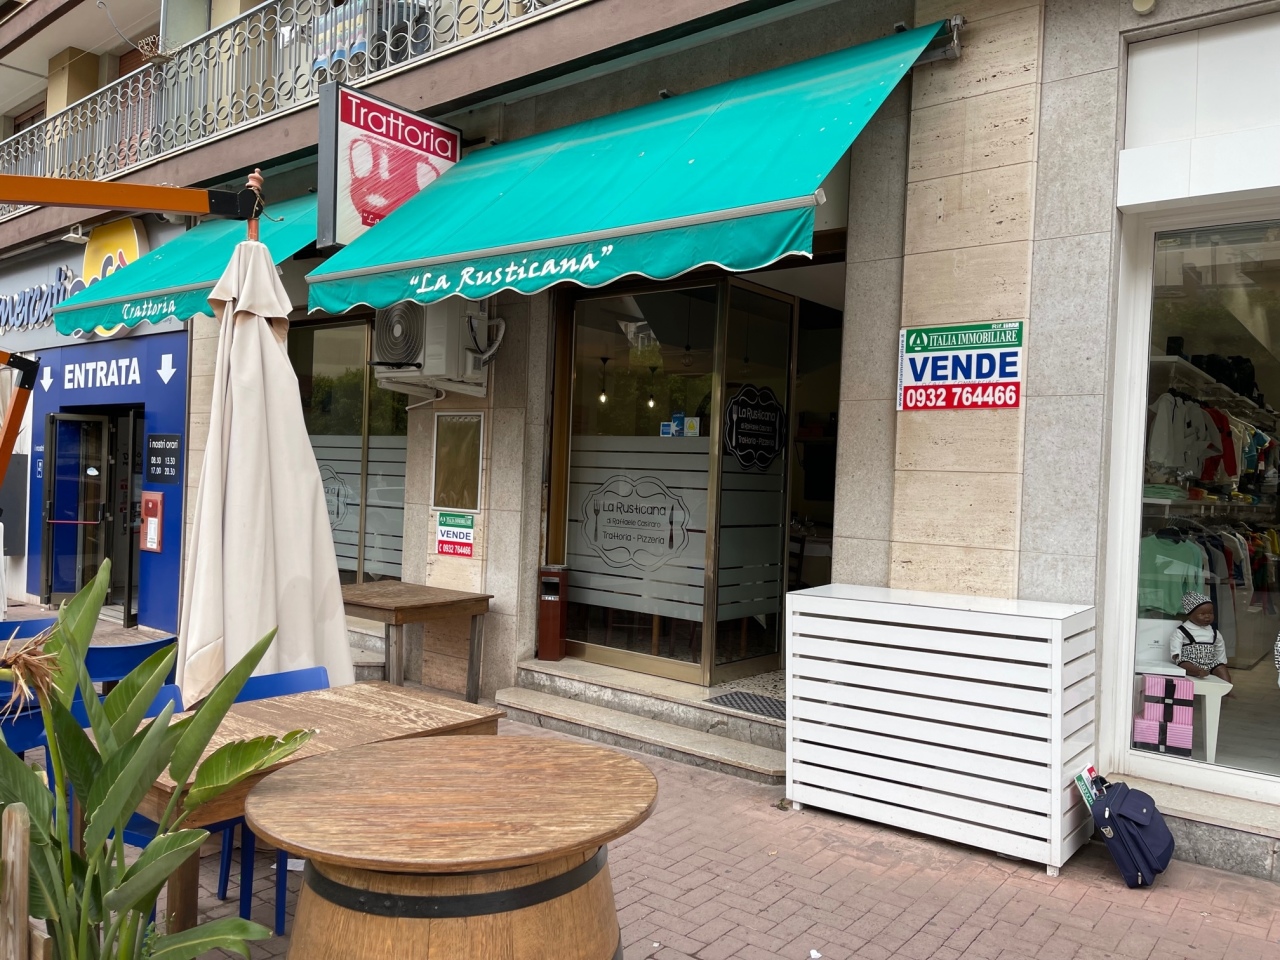 Ristorante / Pizzeria / Trattoria in vendita a Modica, 3 locali, prezzo € 45.000 | PortaleAgenzieImmobiliari.it